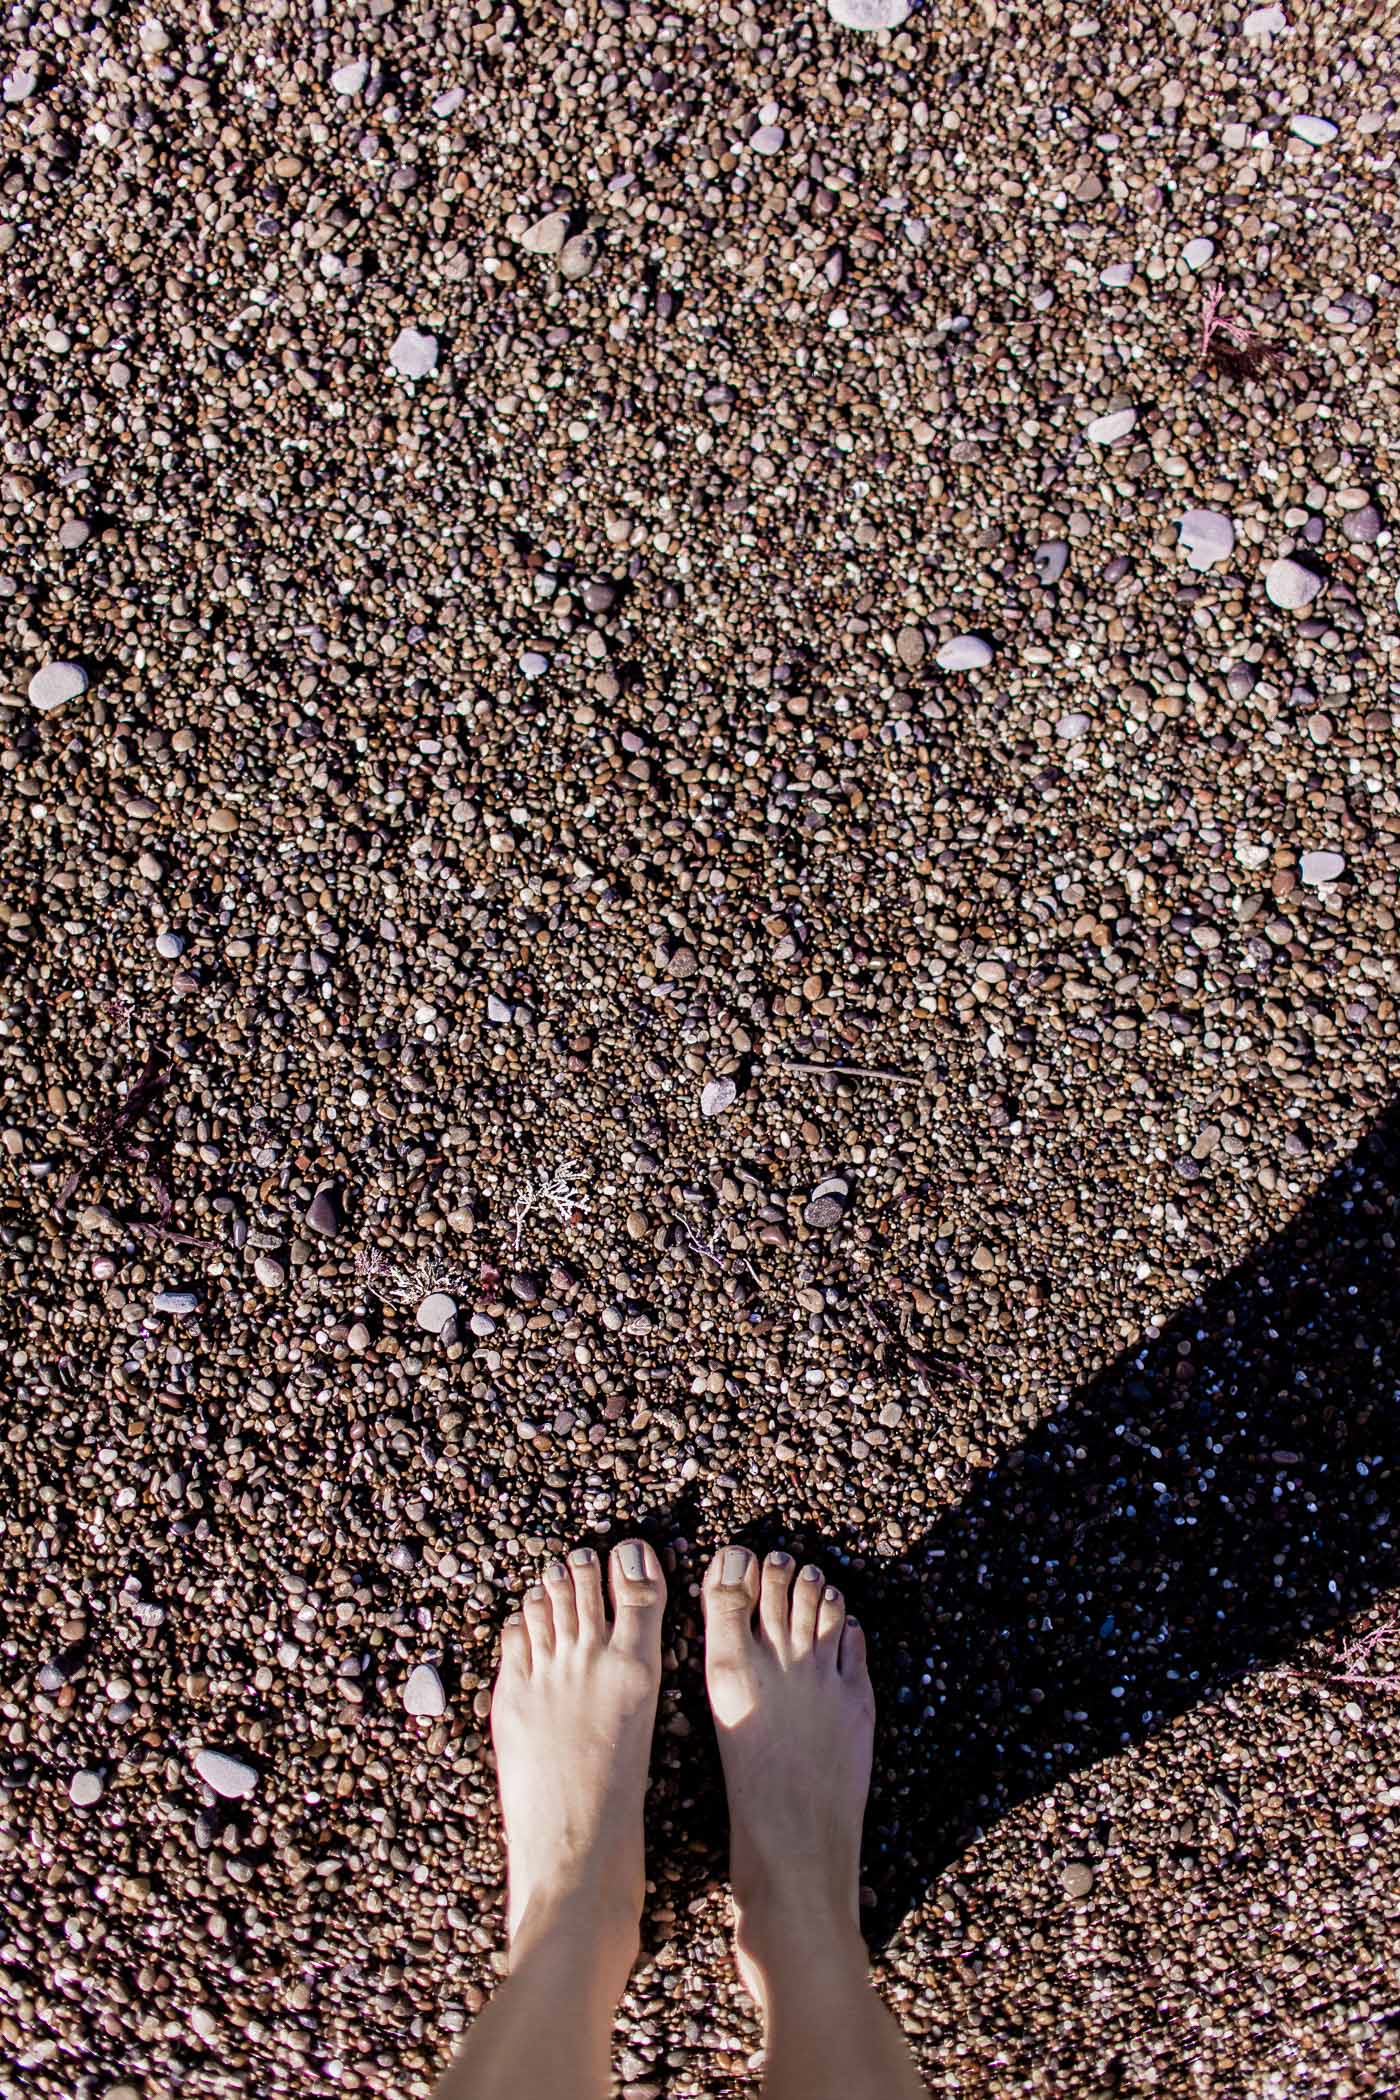 Bean Hollow Pebble Beach, a purple rock based beach near Pescadero, California.